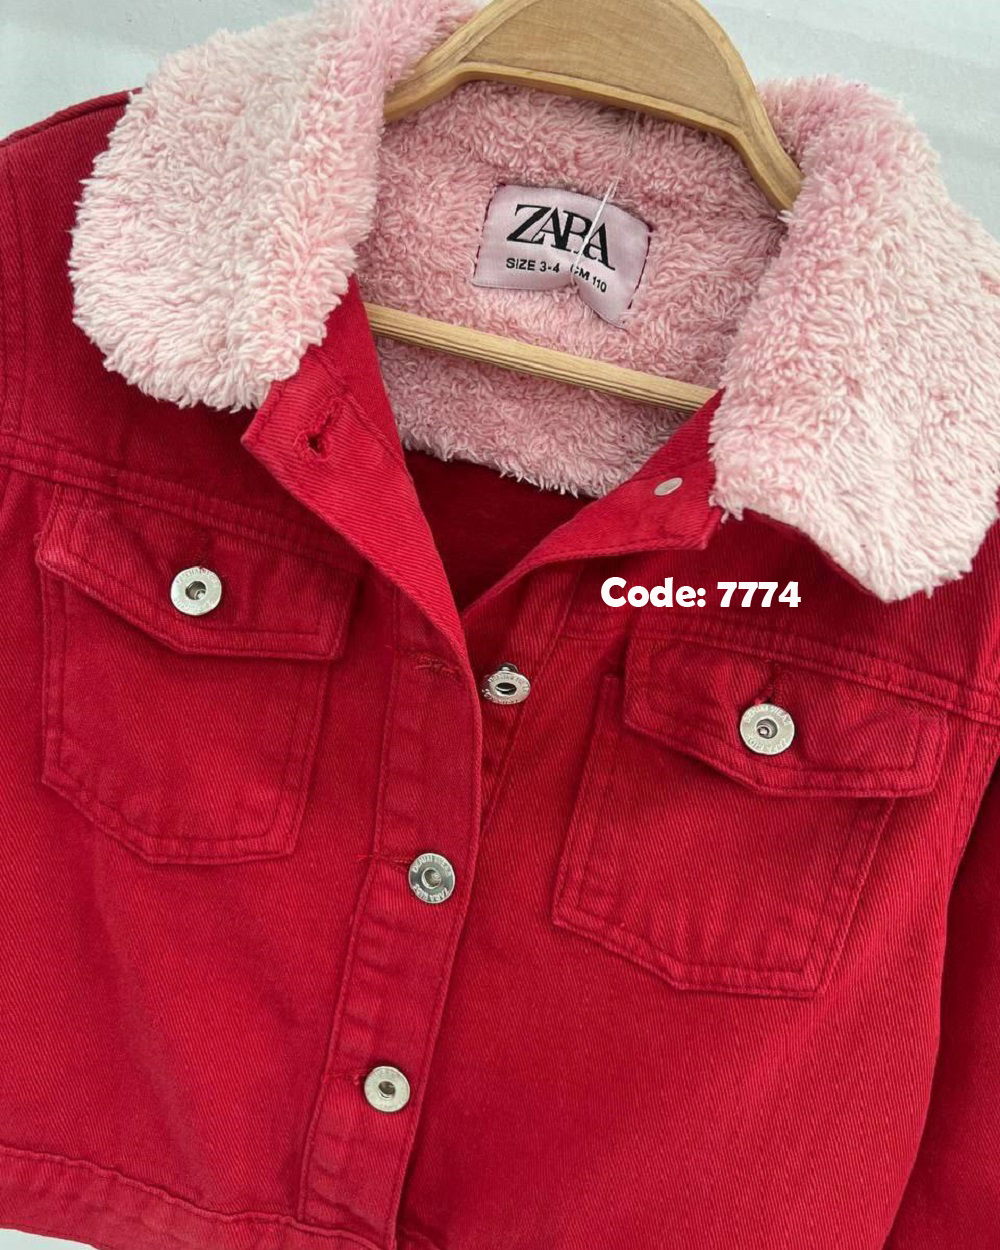 تصویر شماره 3 مربوط به کت جین خاص و دلبر از برند zara ترکیه با کد 7774